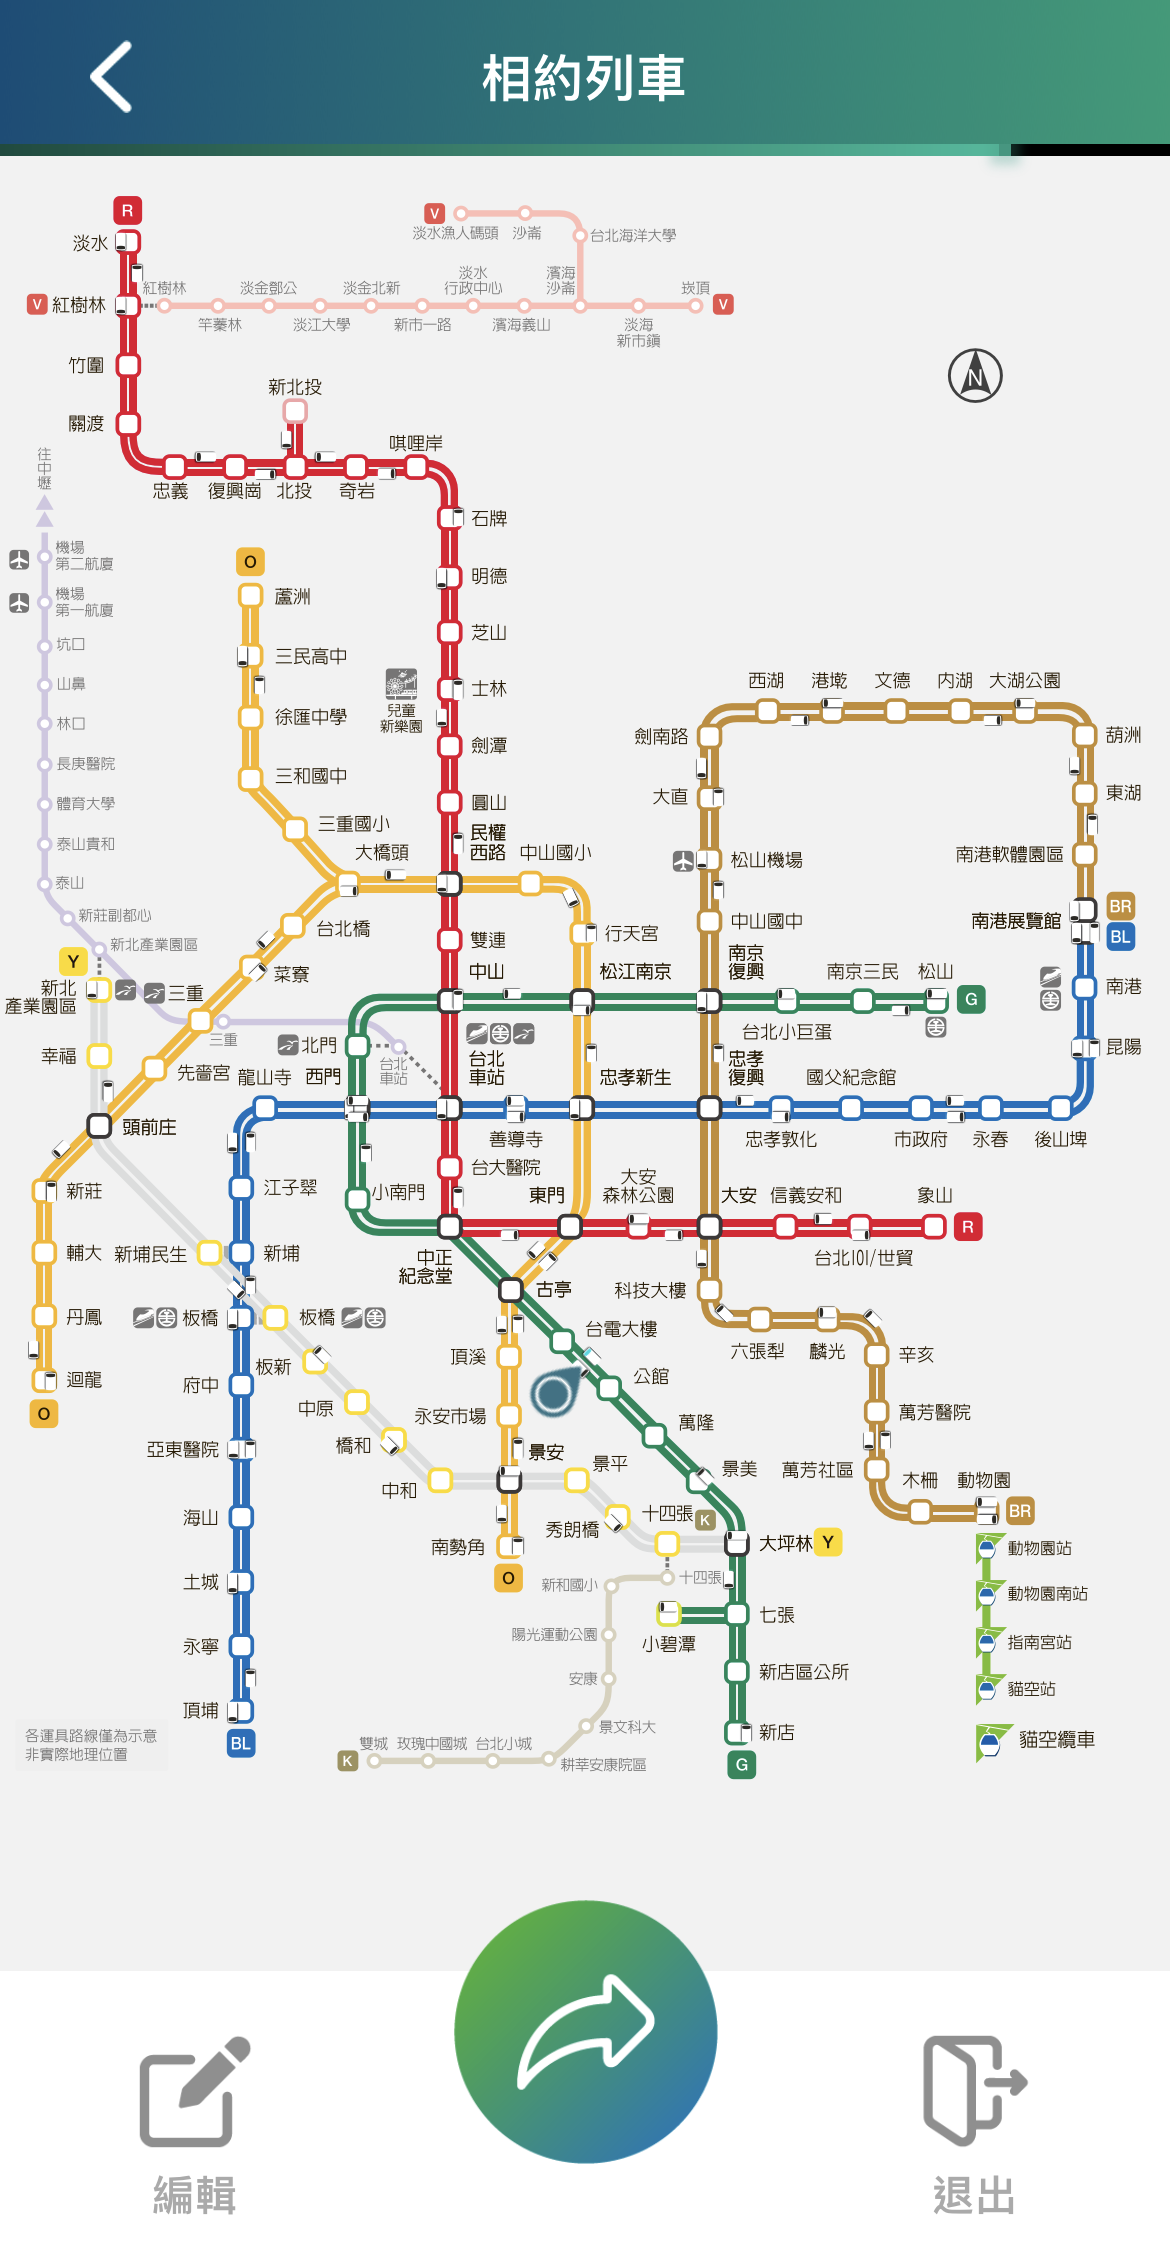 「台北捷運GO」App增加「相約列車」功能 可更快追蹤約定列車位置 - 電腦王阿達